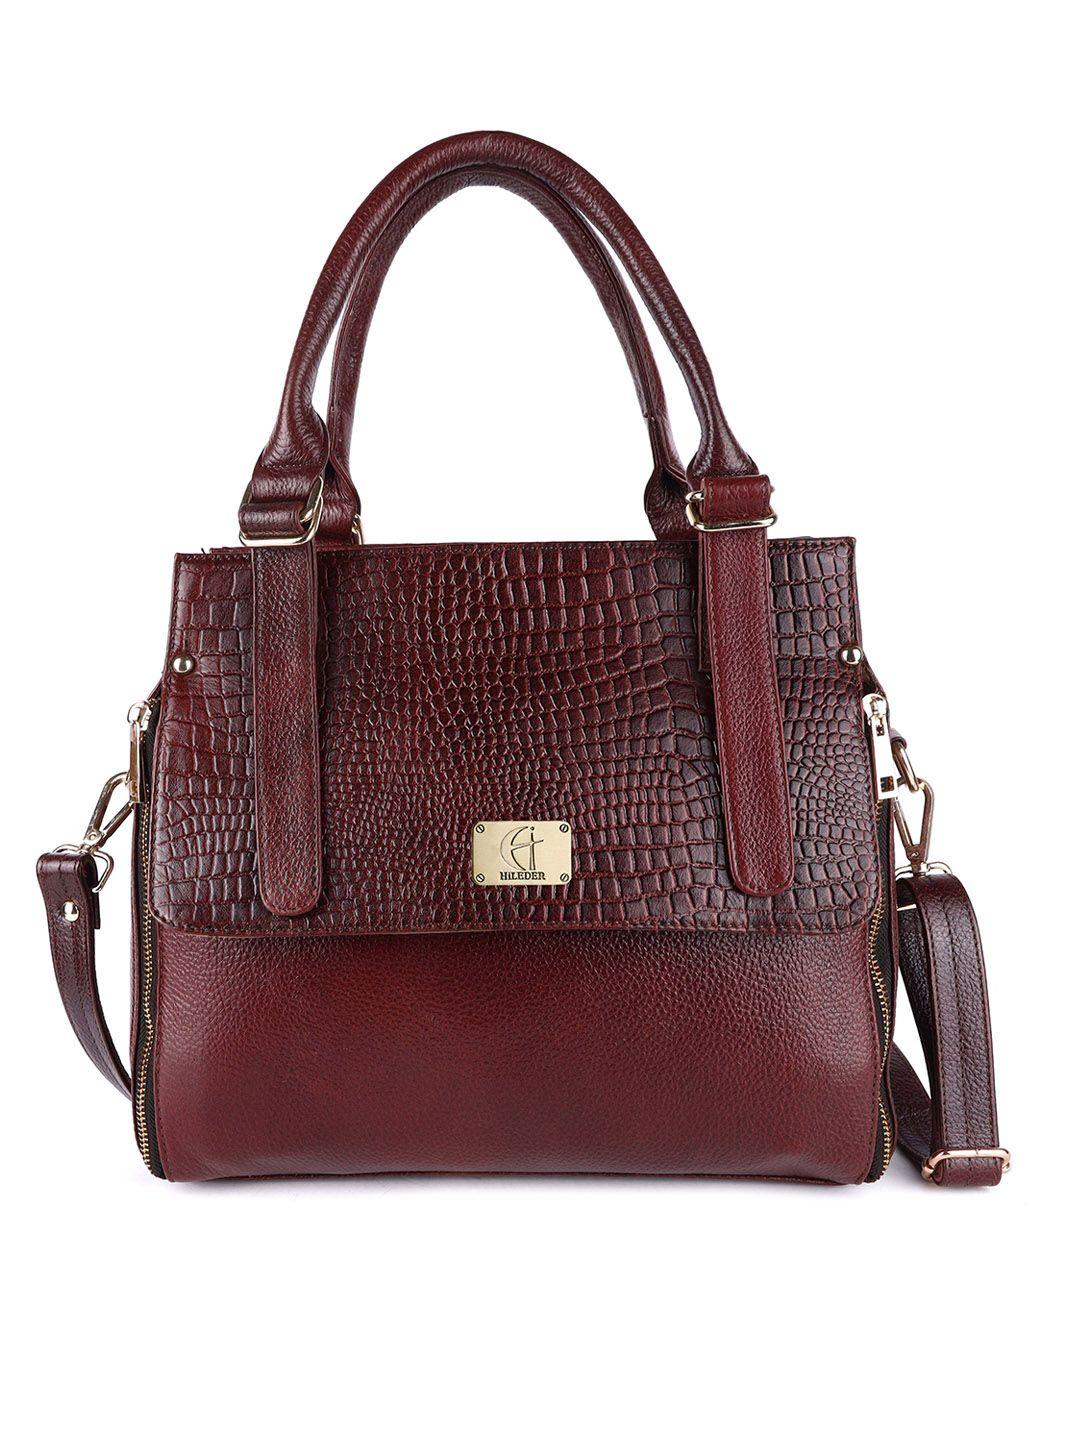 hileder brown textured leather structured handheld bag